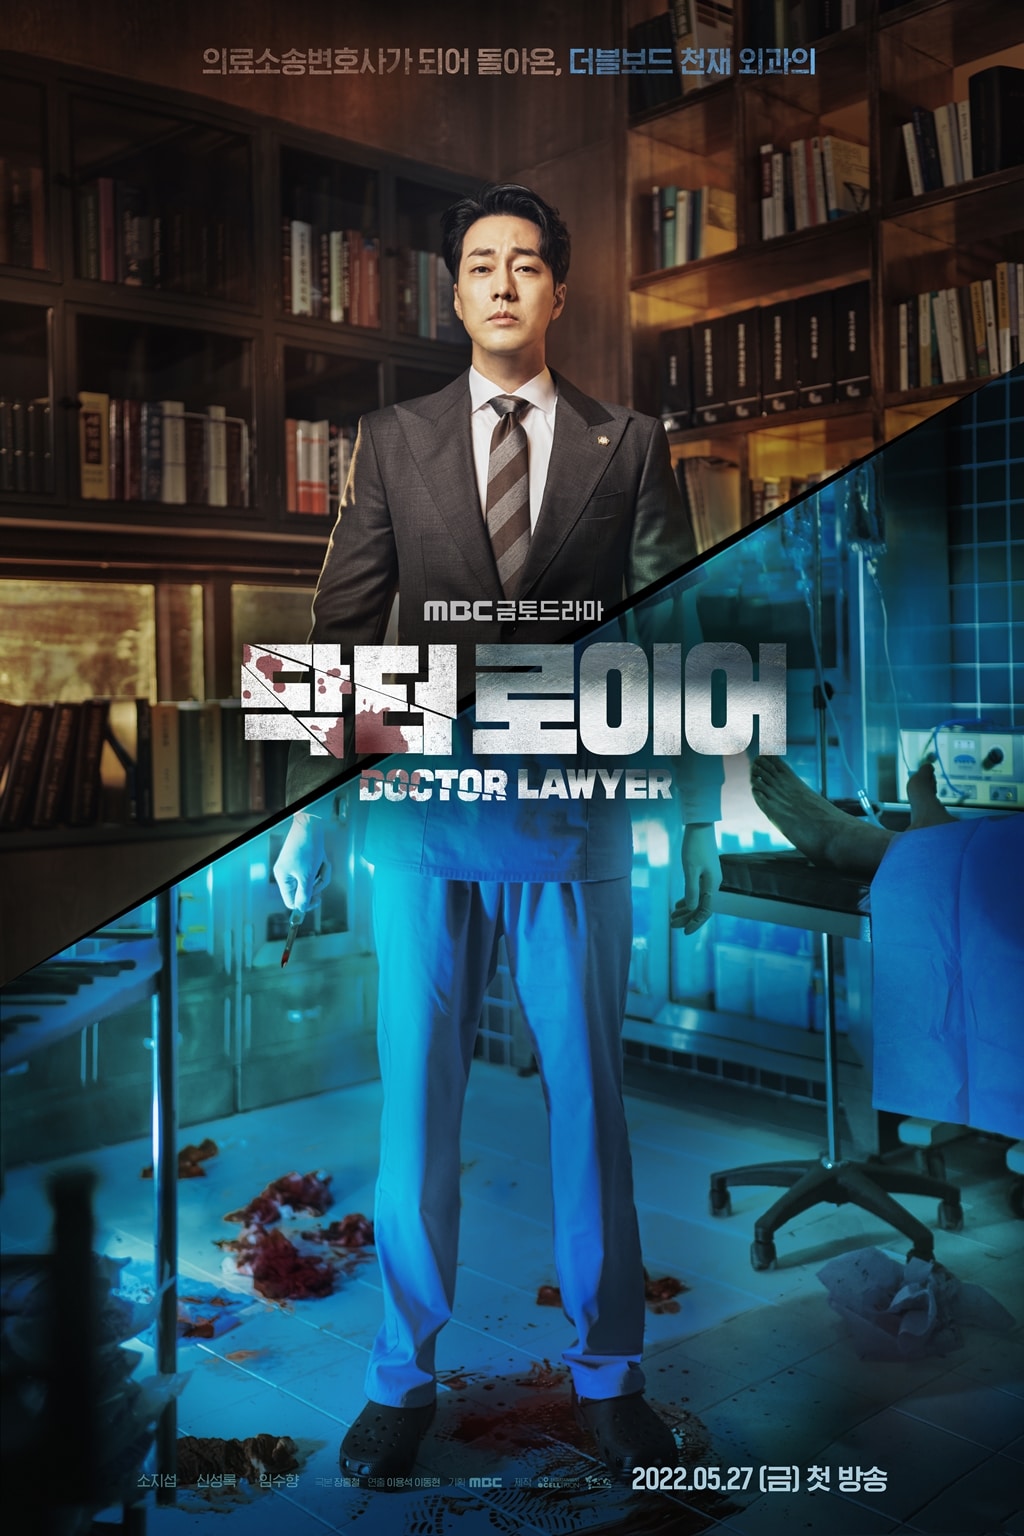 MBCドラマ『ドクター・ロイヤー』はソ・ジソブだからこそ演じられると称賛が届いている